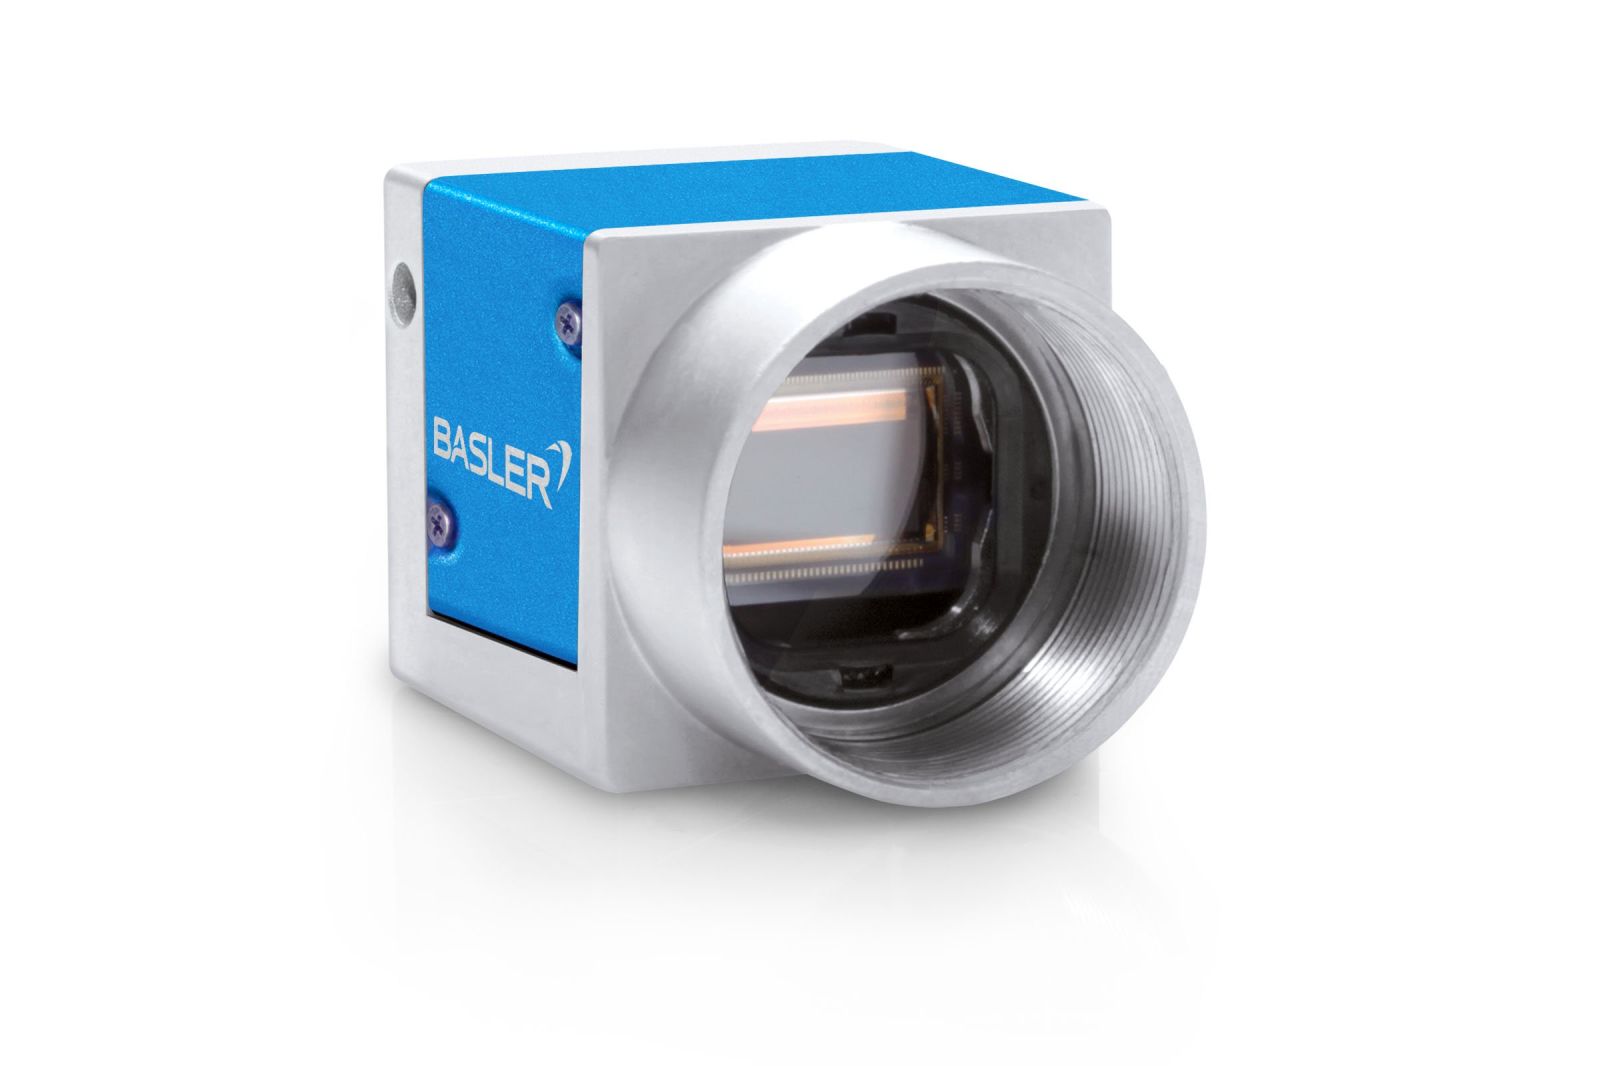 BASLER MEDace - GigE Camera MED acA2500-20gmMED - Python5000 Area Scan Camera